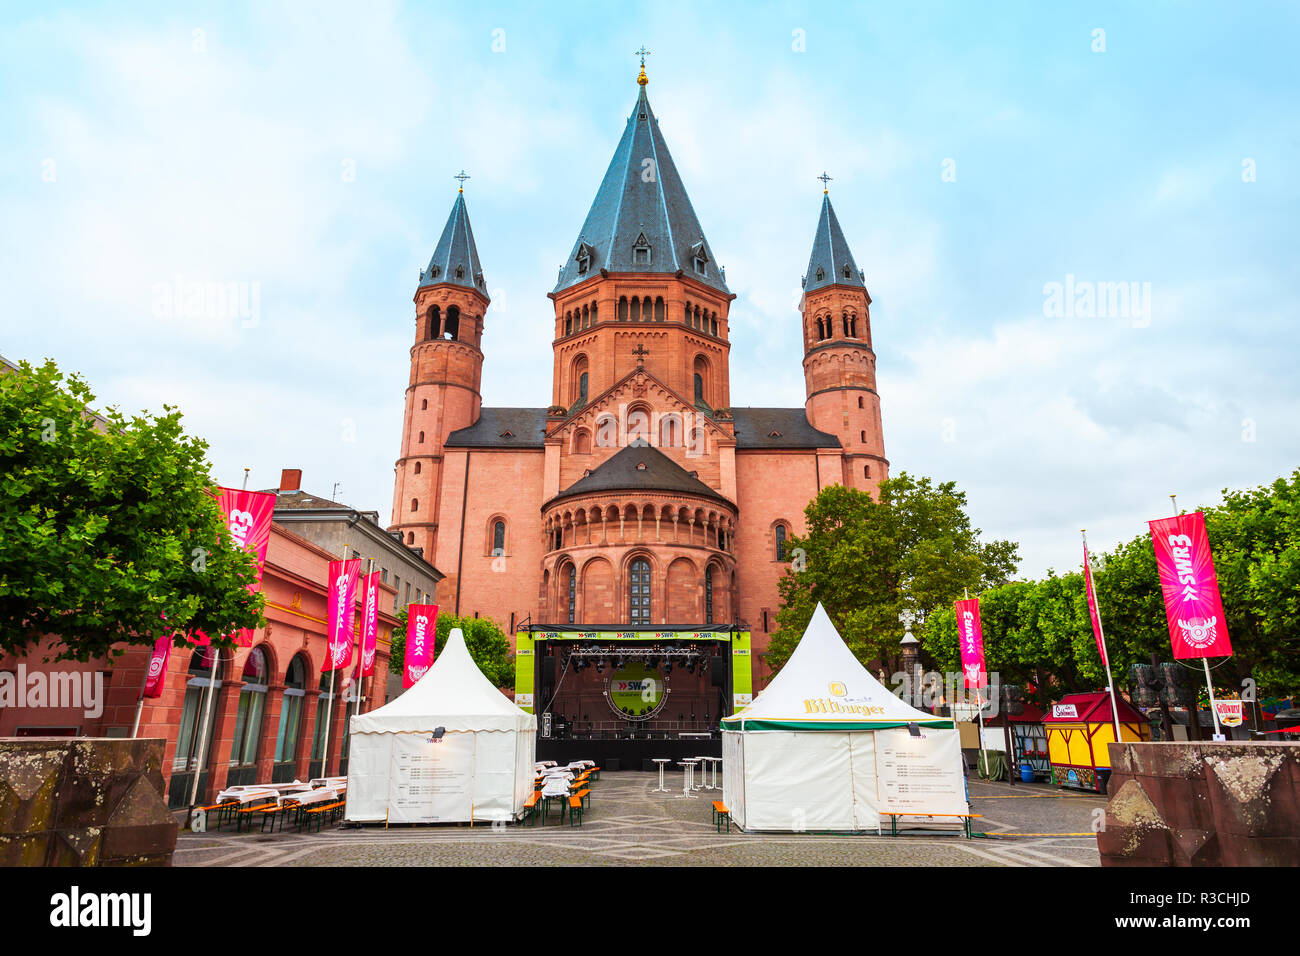 MAINZ, Germania - 25 giugno 2018: Cattedrale di Magonza si trova presso la piazza del mercato della città vecchia Foto Stock